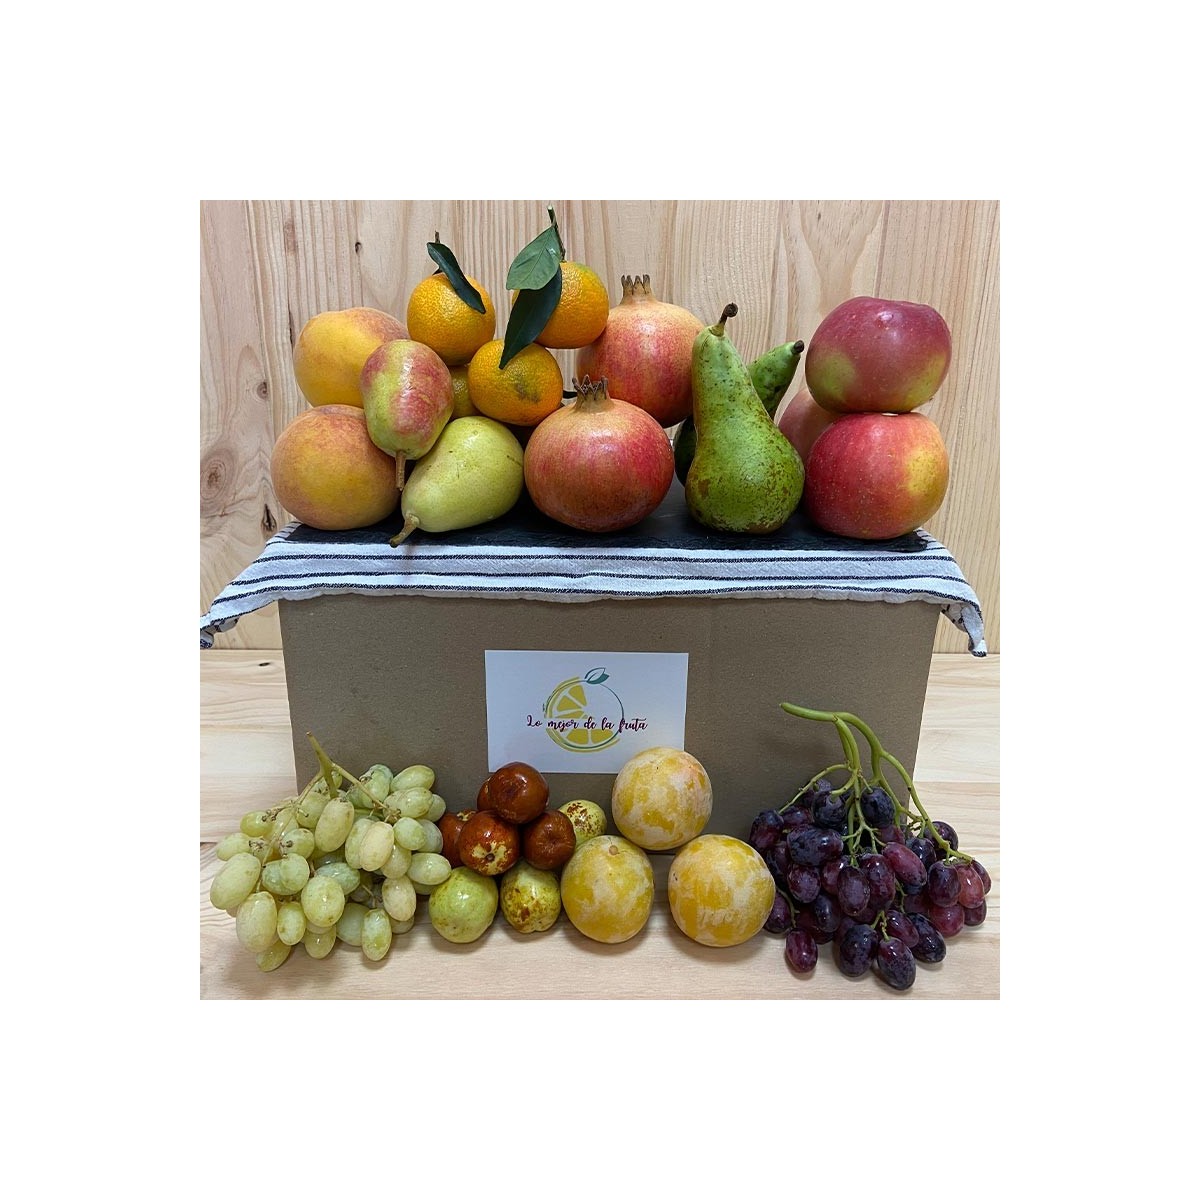 Pack Octubre - Packs Frutas y Verduras -1- Lo mejor de la fruta